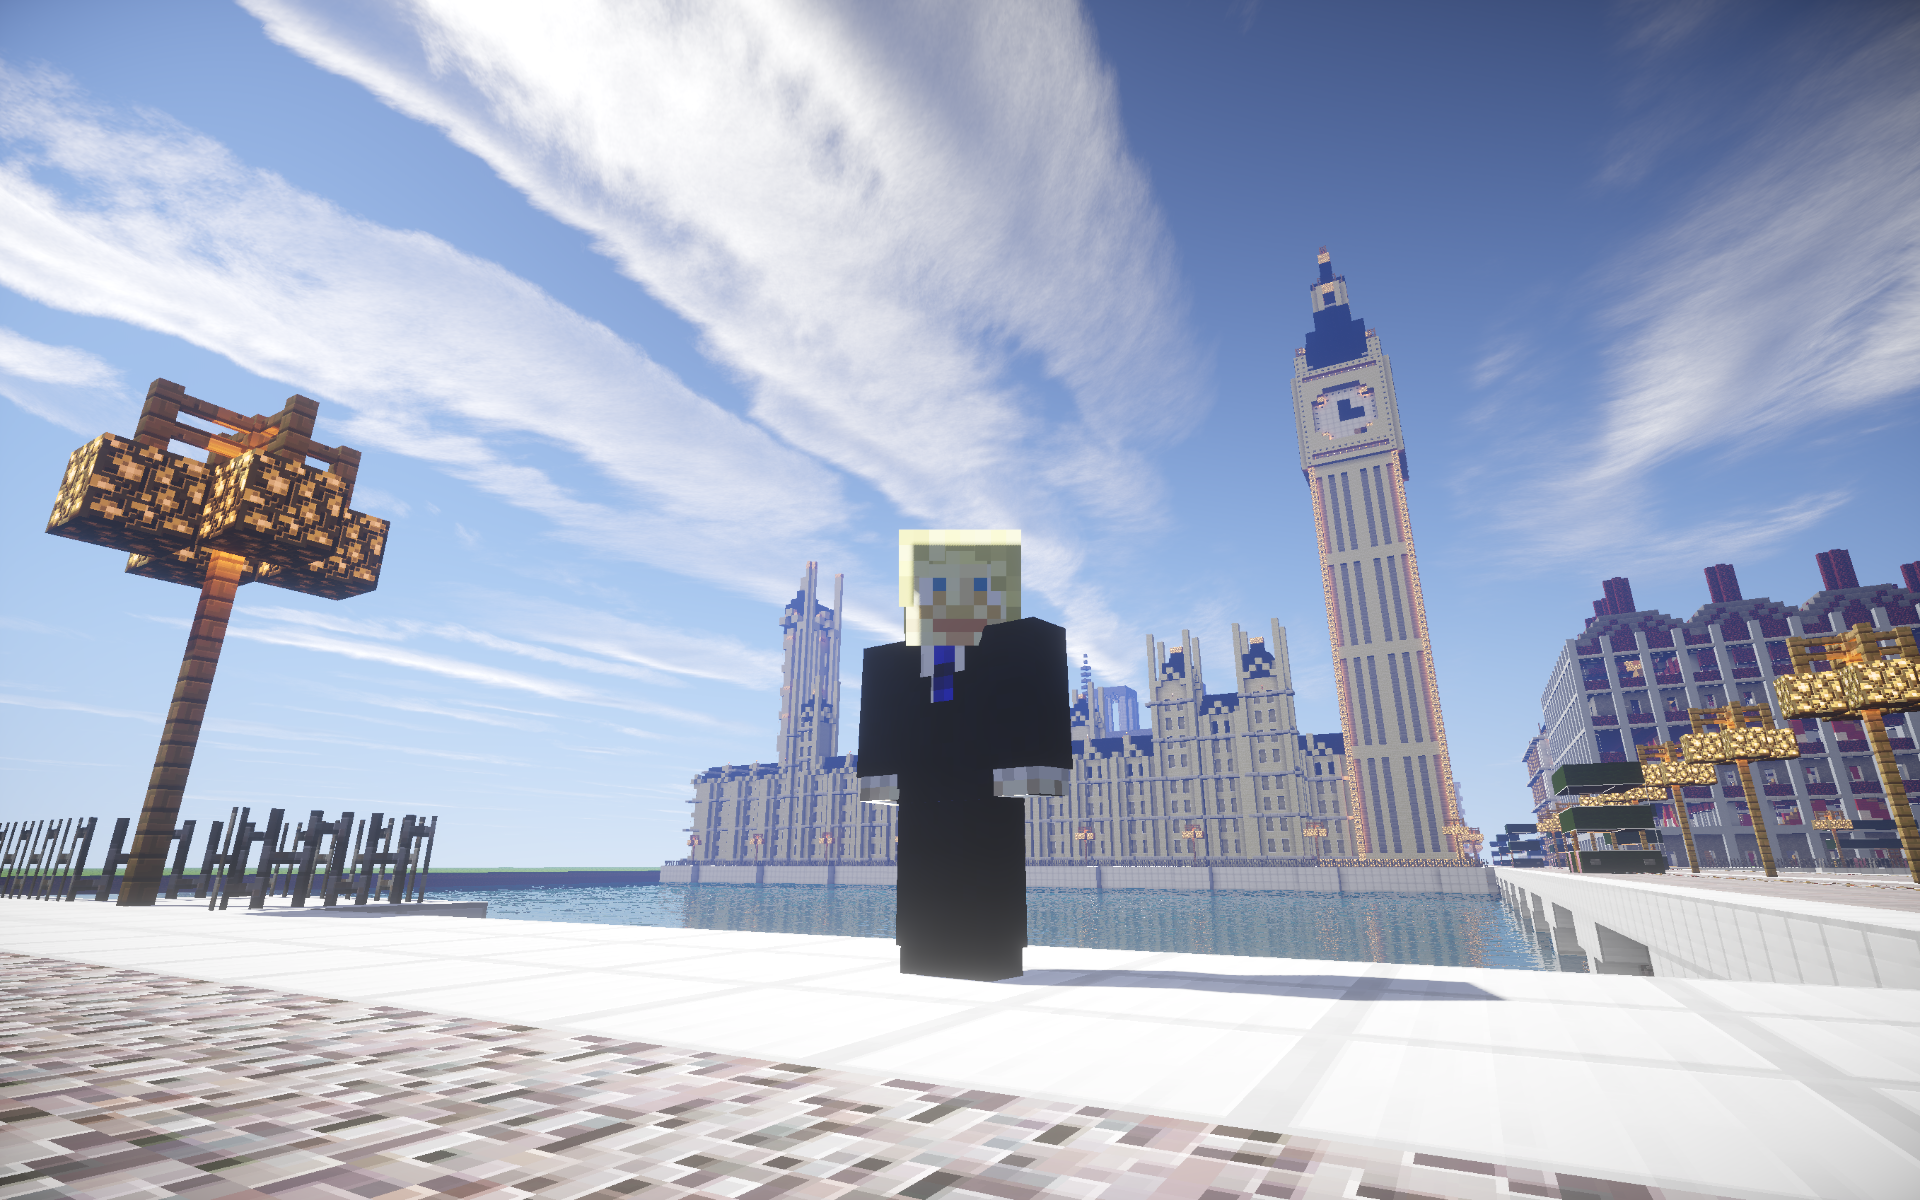 ロンドン 2億円相当 を投じるゲーム開発支援プログラム Games London を発足 市長が Minecraft の中で発表する Automaton